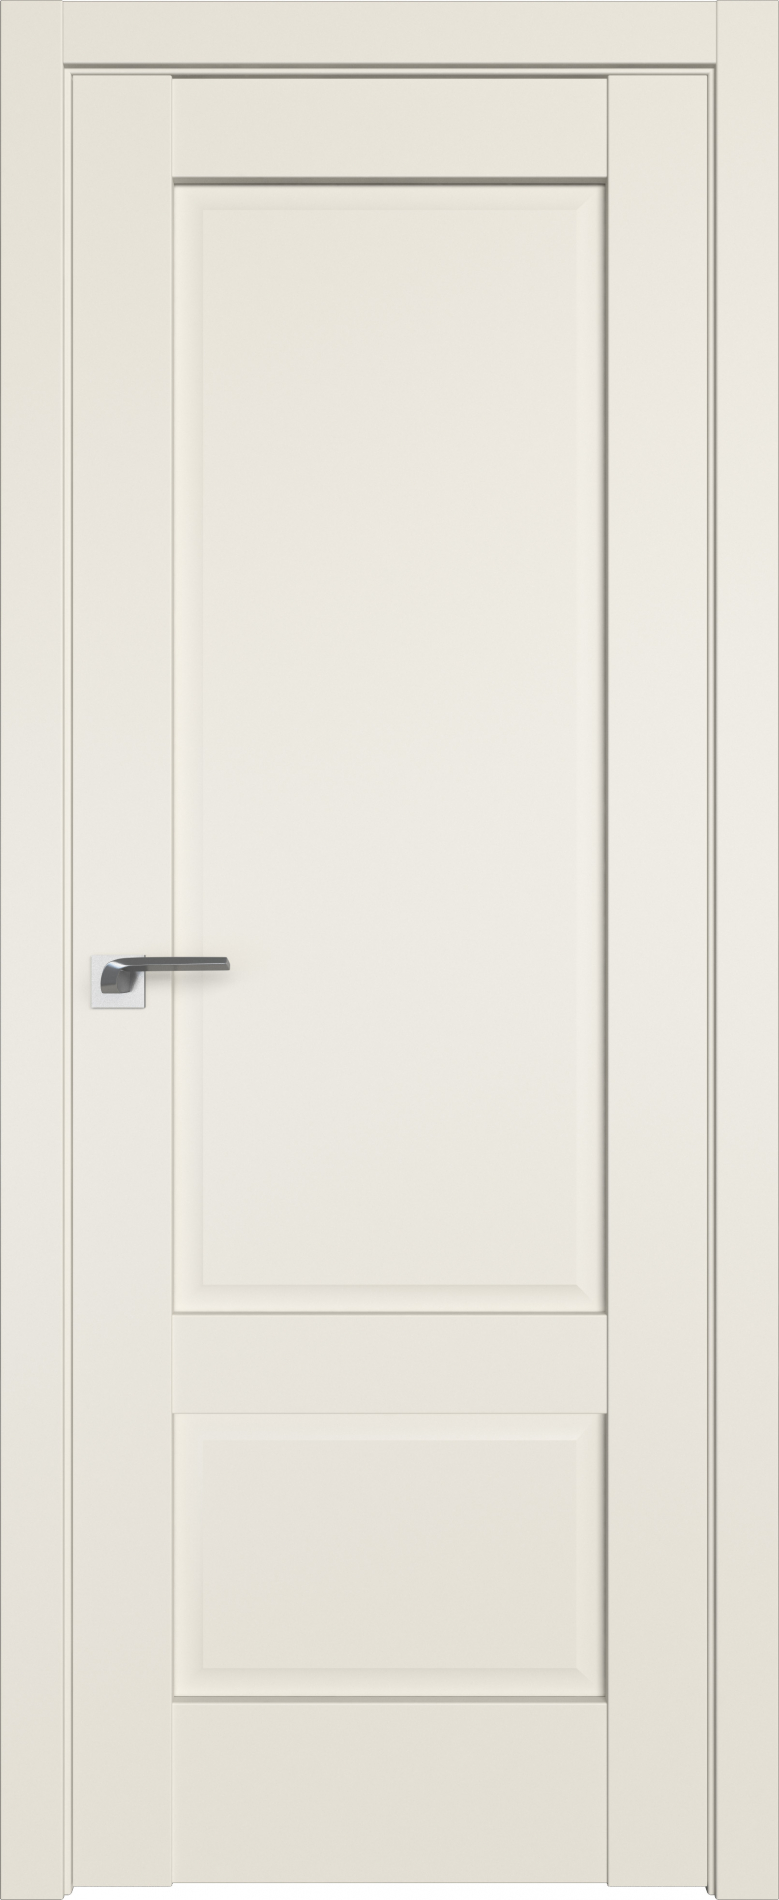 межкомнатные двери  Profil Doors 105U магнолия